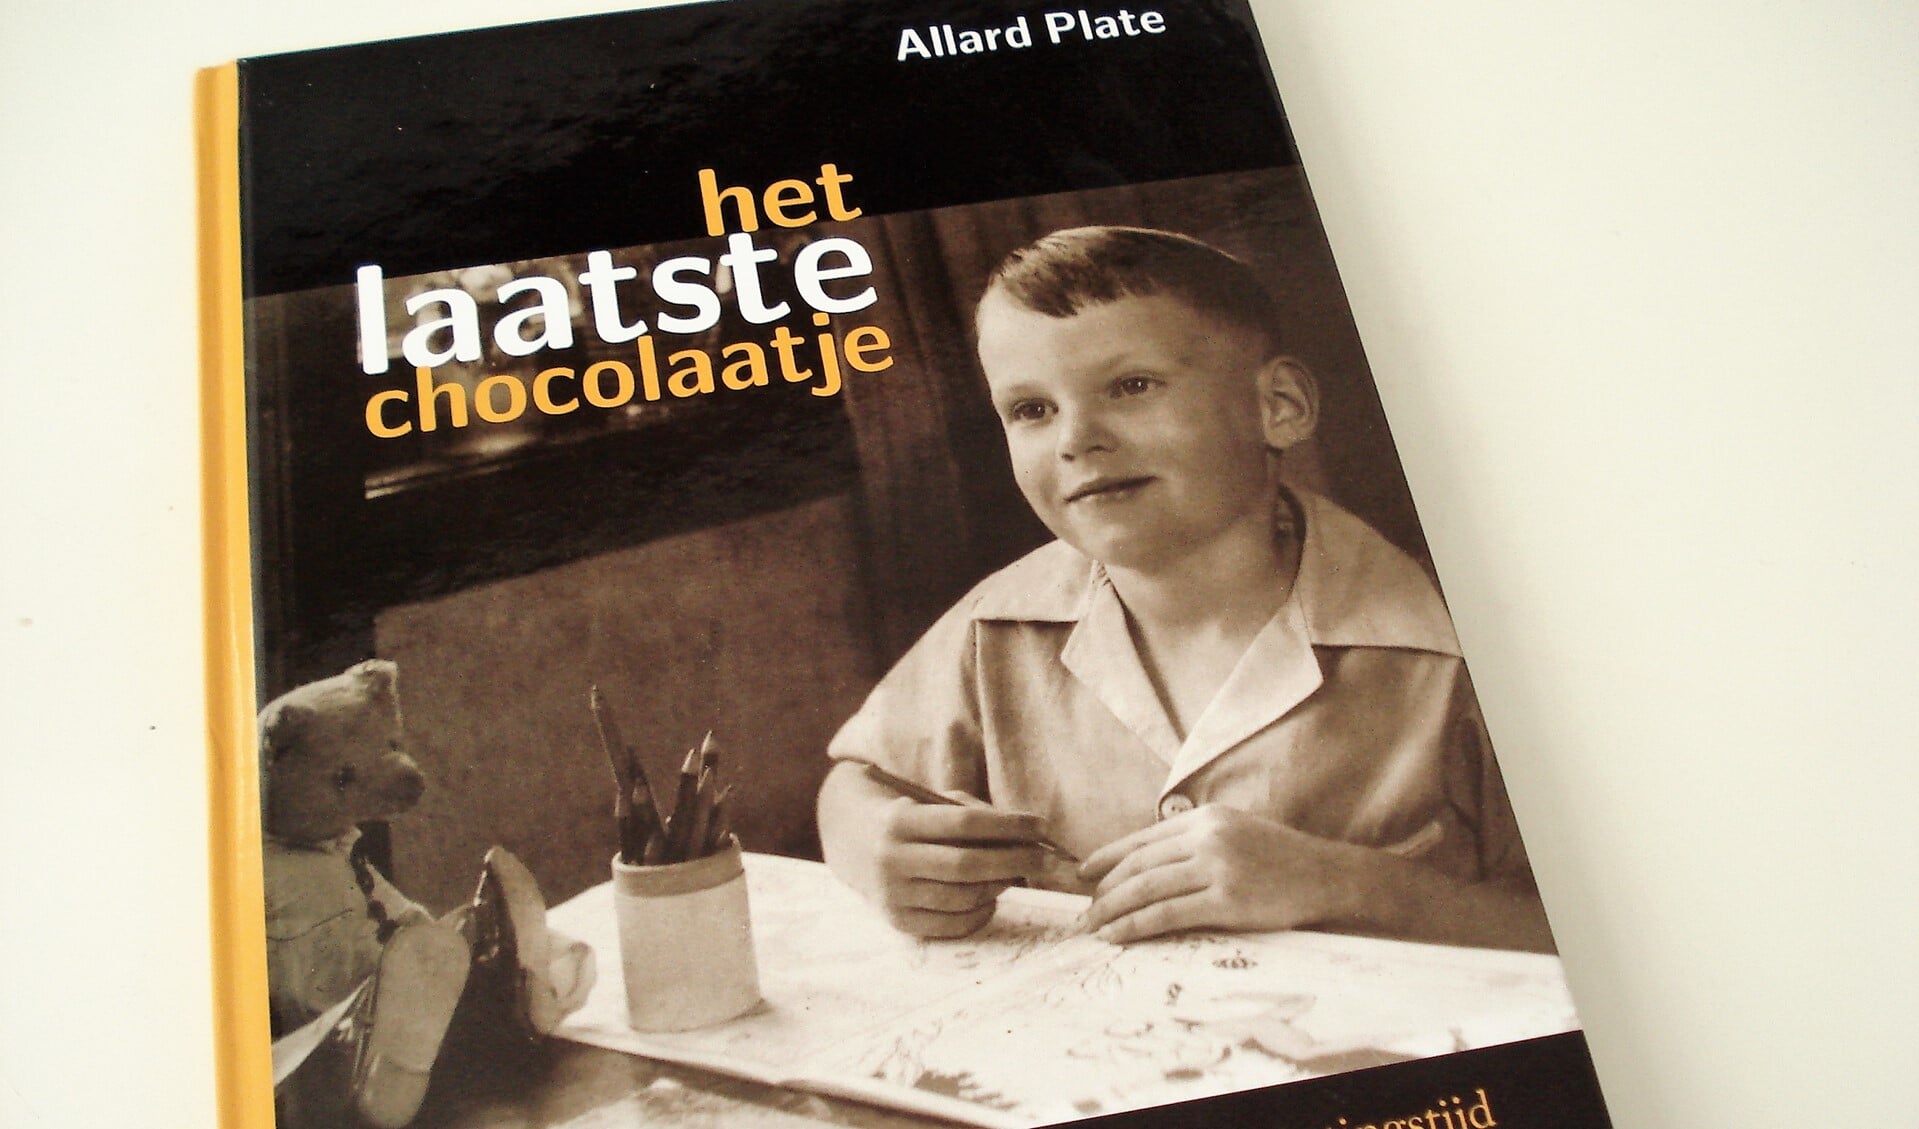 Het boekje dat Allard Plate schreef  over zijn jeugd in de bezettingstijd.